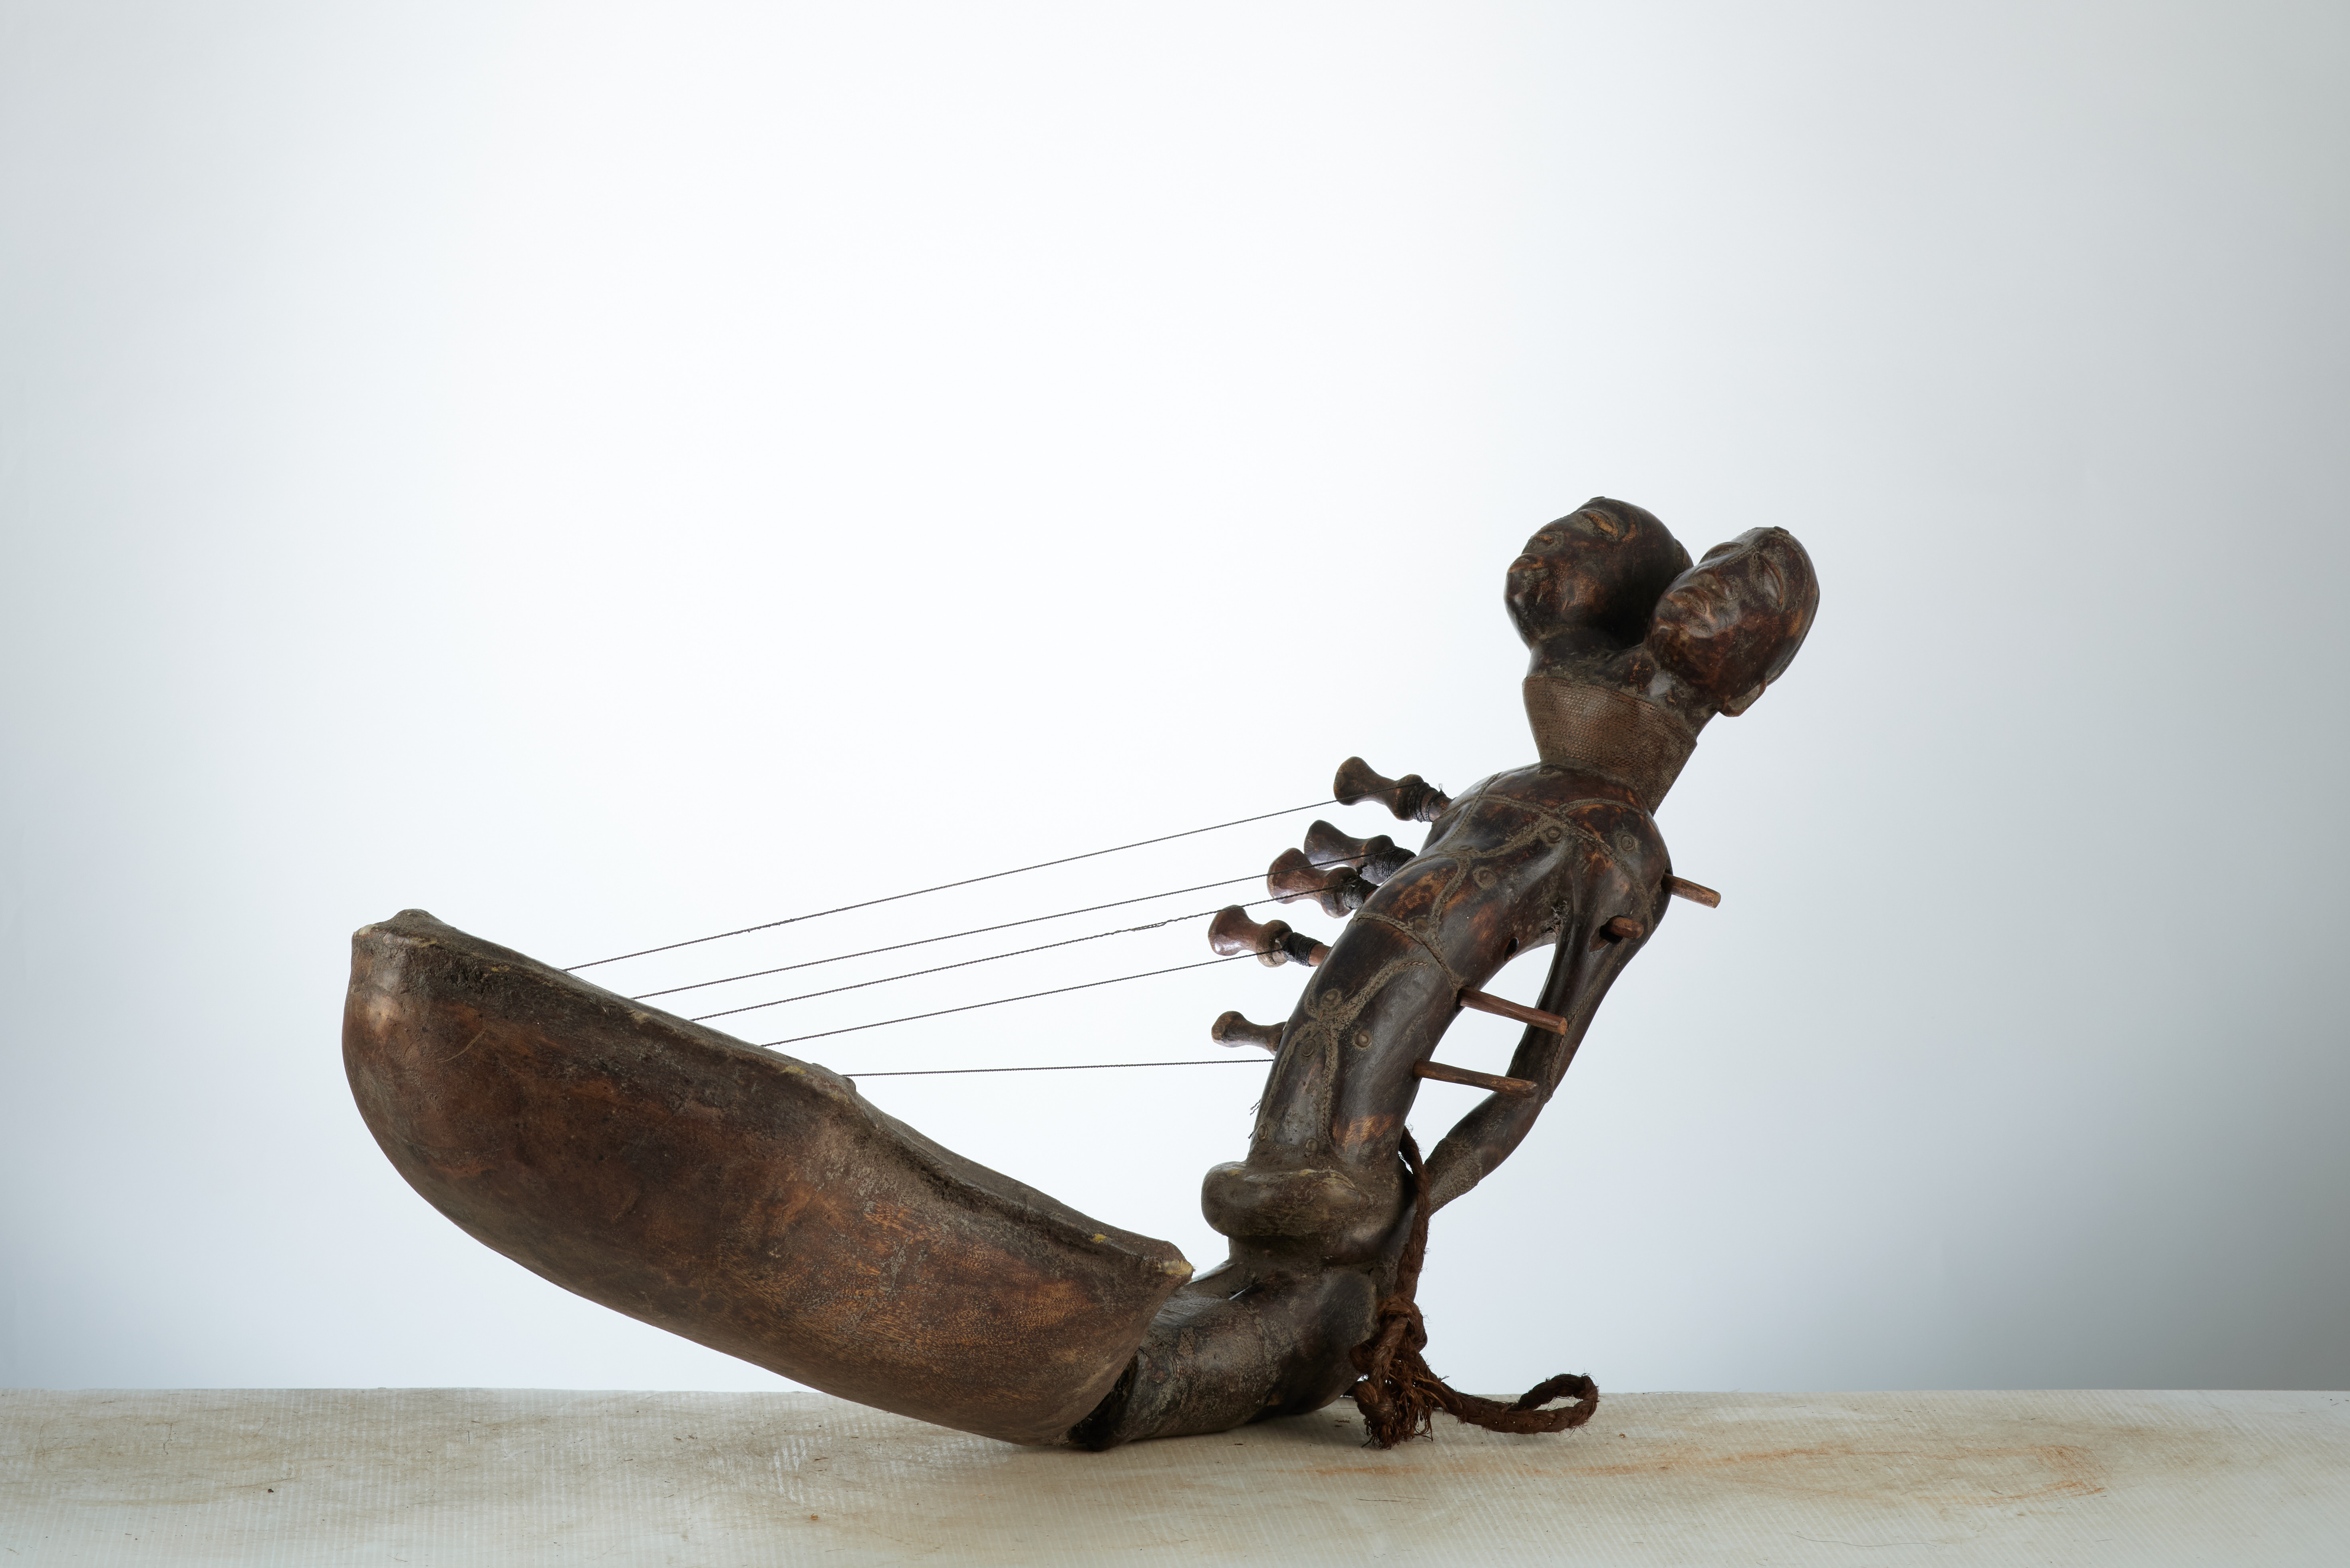 Mangbetu ( harpe ), d`afrique : rep.dem.Congo, statuette Mangbetu ( harpe ), masque ancien africain Mangbetu ( harpe ), art du rep.dem.Congo - Art Africain, collection privées Belgique. Statue africaine de la tribu des Mangbetu ( harpe ), provenant du rep.dem.Congo, 1921:Instrument de musique Mangbetu .Harpe anthropomorphe cordophone à 5 cordes,sculpté à double tête. (col. Minga zaire 1971) milieu du 20eme sc.. art,culture,masque,statue,statuette,pot,ivoire,exposition,expo,masque original,masques,statues,statuettes,pots,expositions,expo,masques originaux,collectionneur d`art,art africain,culture africaine,masque africain,statue africaine,statuette africaine,pot africain,ivoire africain,exposition africain,expo africain,masque origina africainl,masques africains,statues africaines,statuettes africaines,pots africains,expositions africaines,expo africaines,masques originaux  africains,collectionneur d`art africain